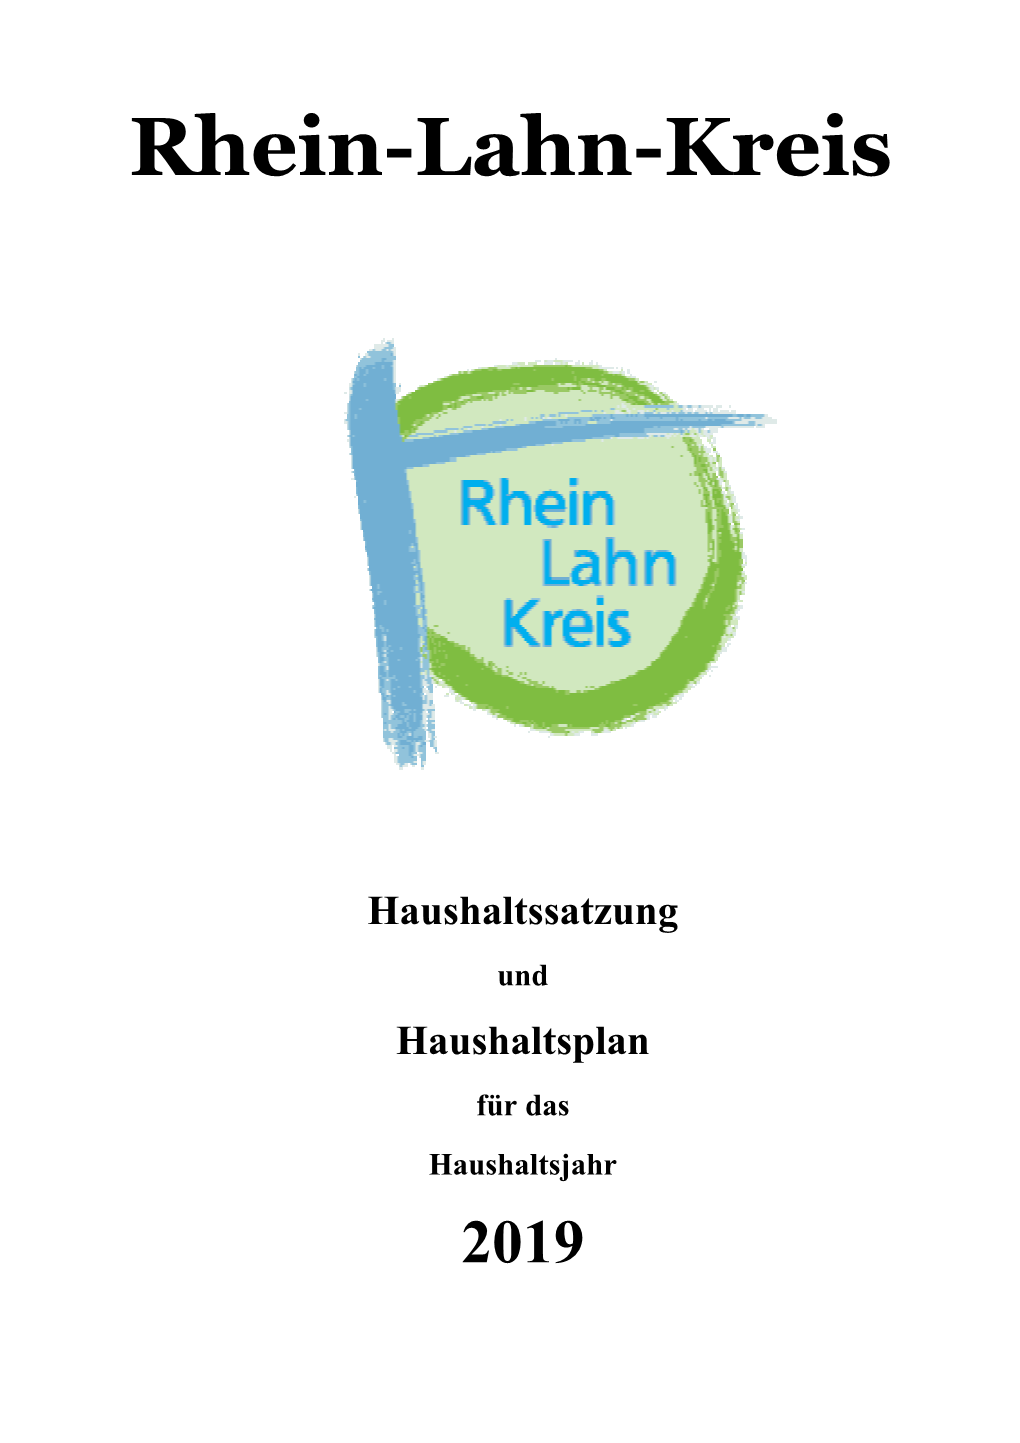 Haushaltsplan Des Rhein-Lahn-Kreises 2019